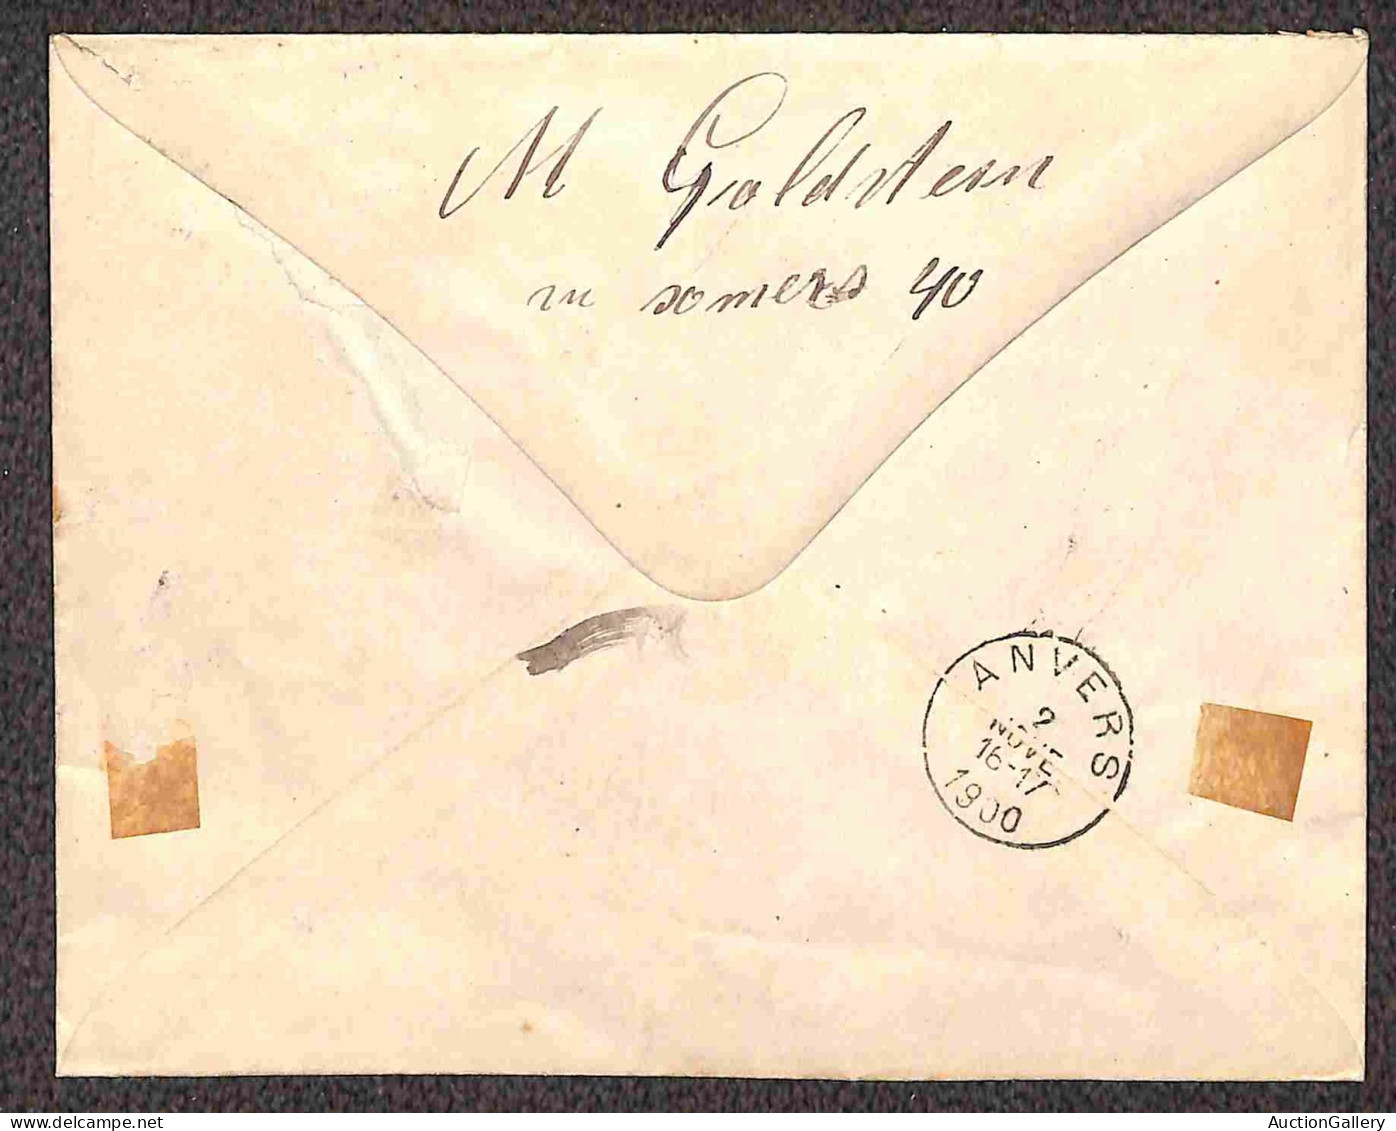 Lotti&Collezioni - Europa&Oltremare - Mondiali - 1867/1935 - Cinque lettere e due cartoline con diverse affrancature del